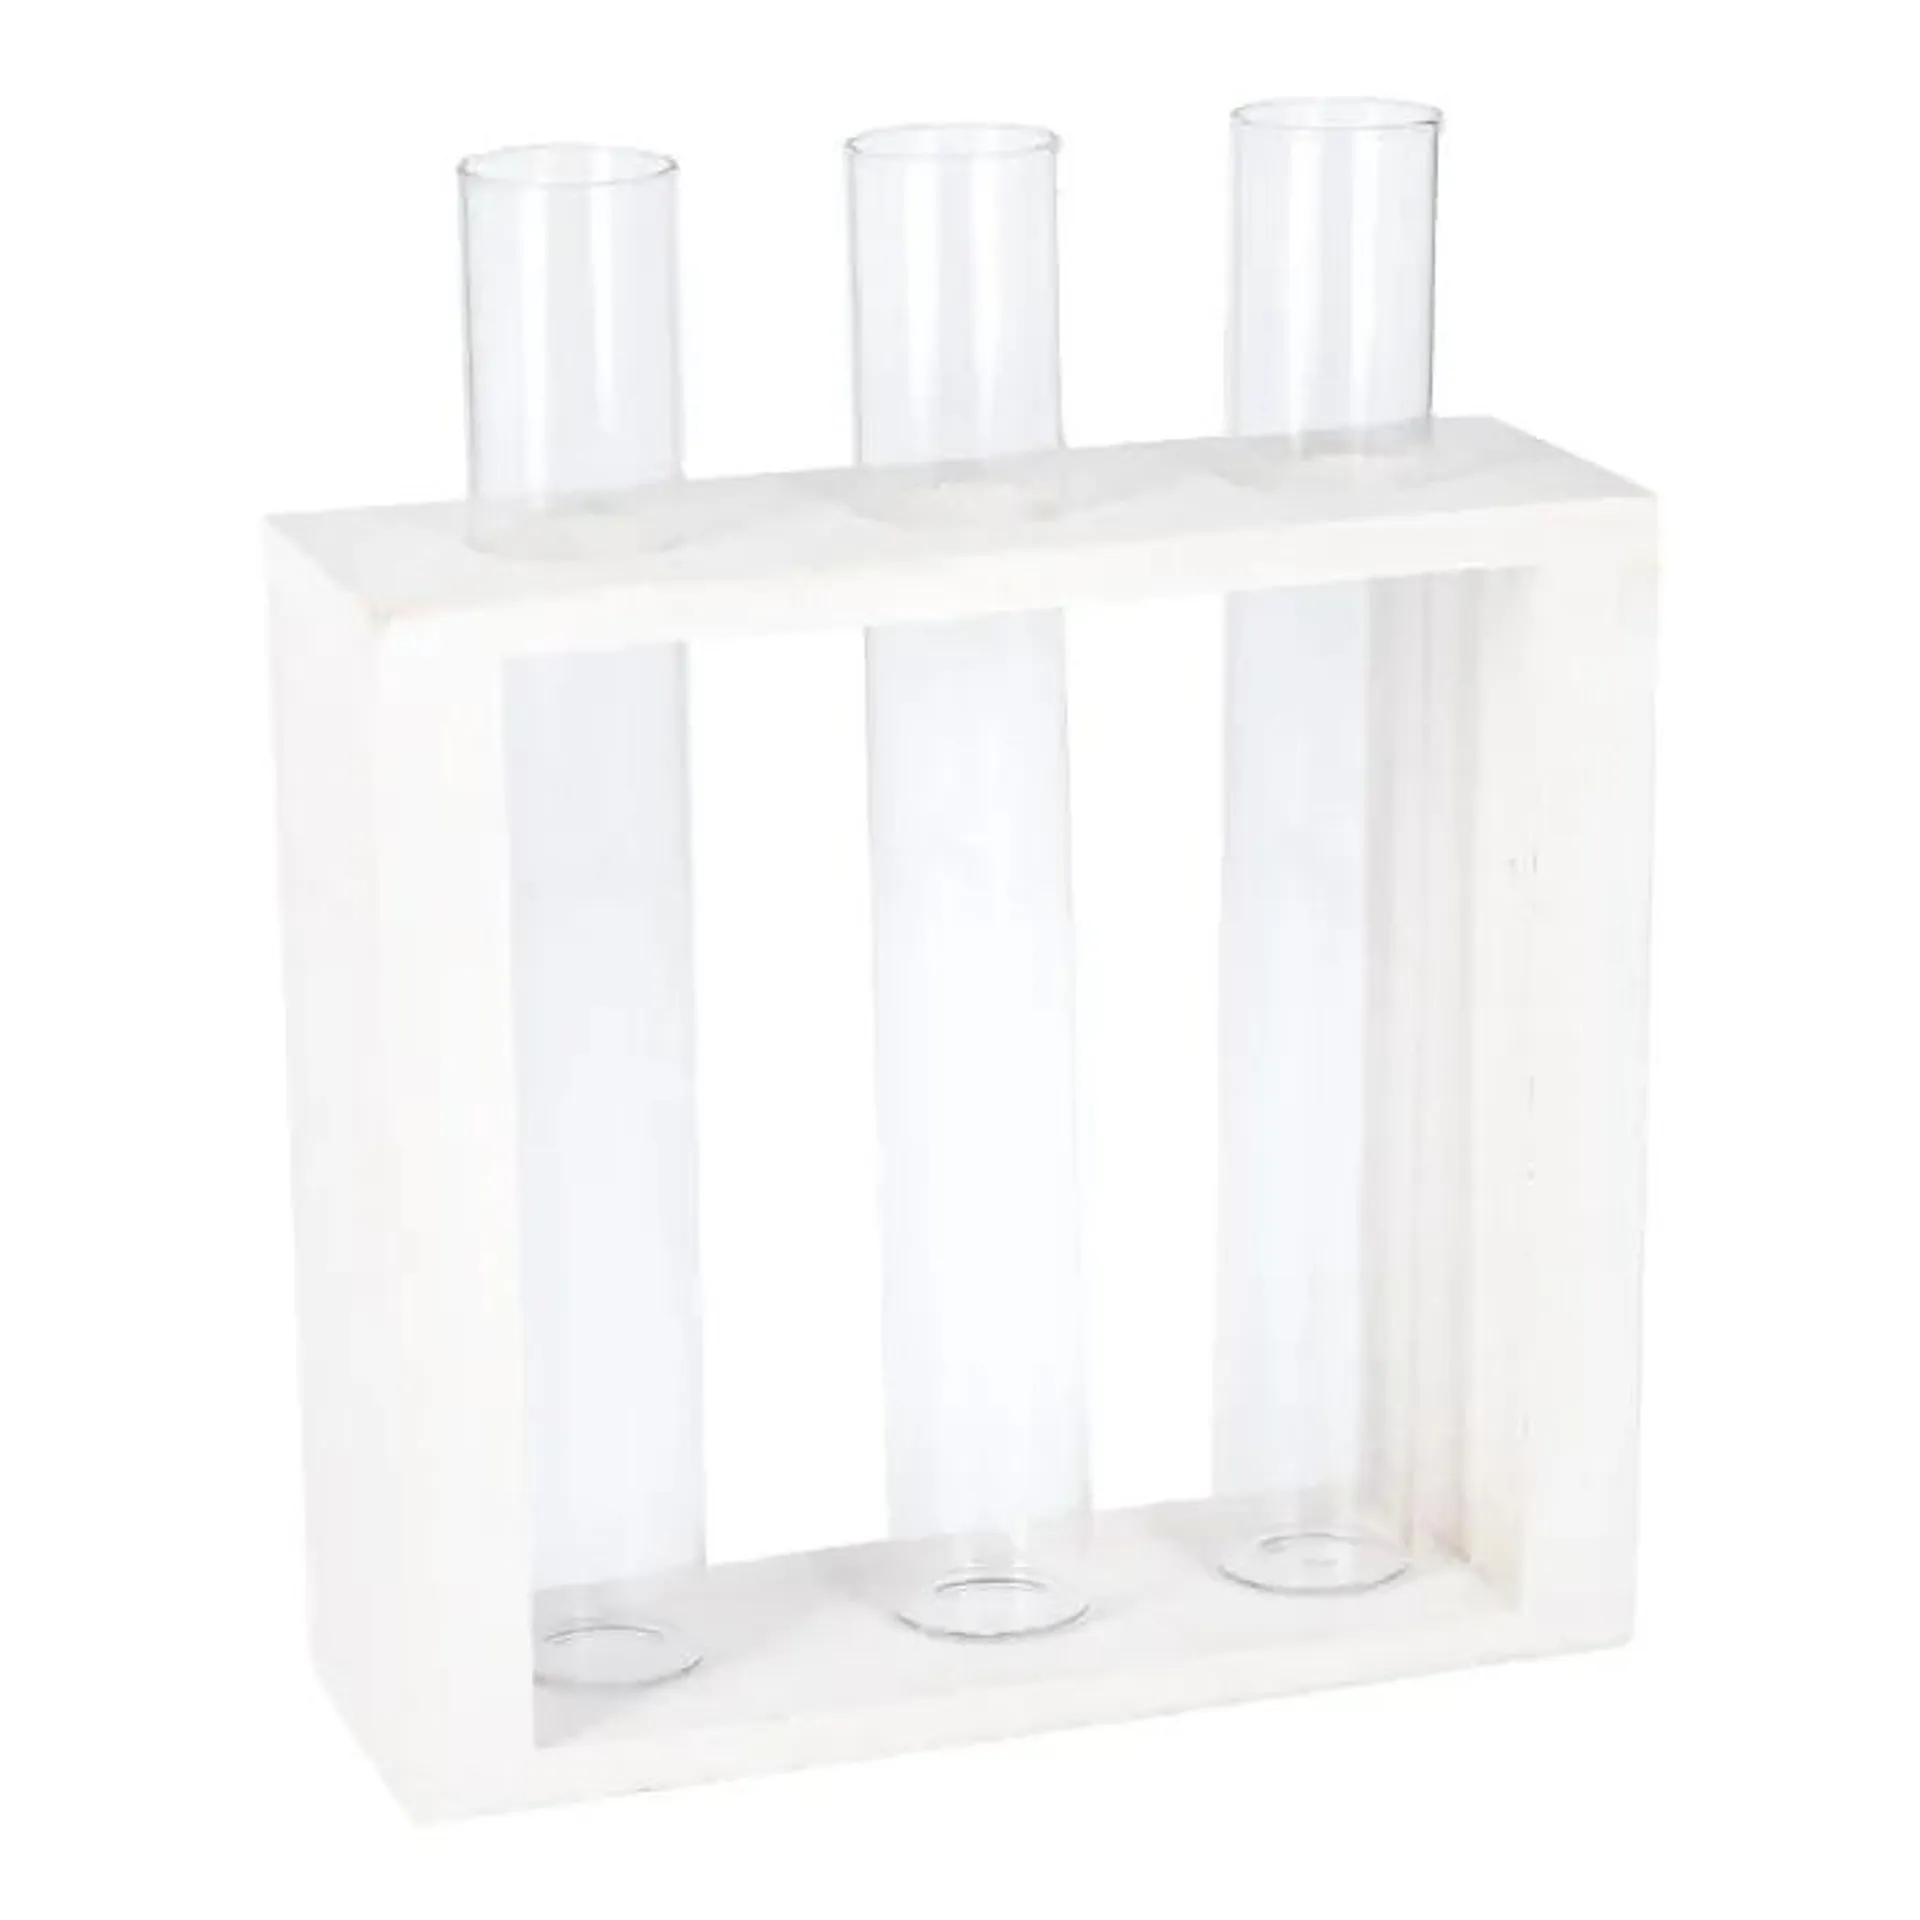 Vase Reagenzglas 3 Stück in weißem Holzständer, 19 cm